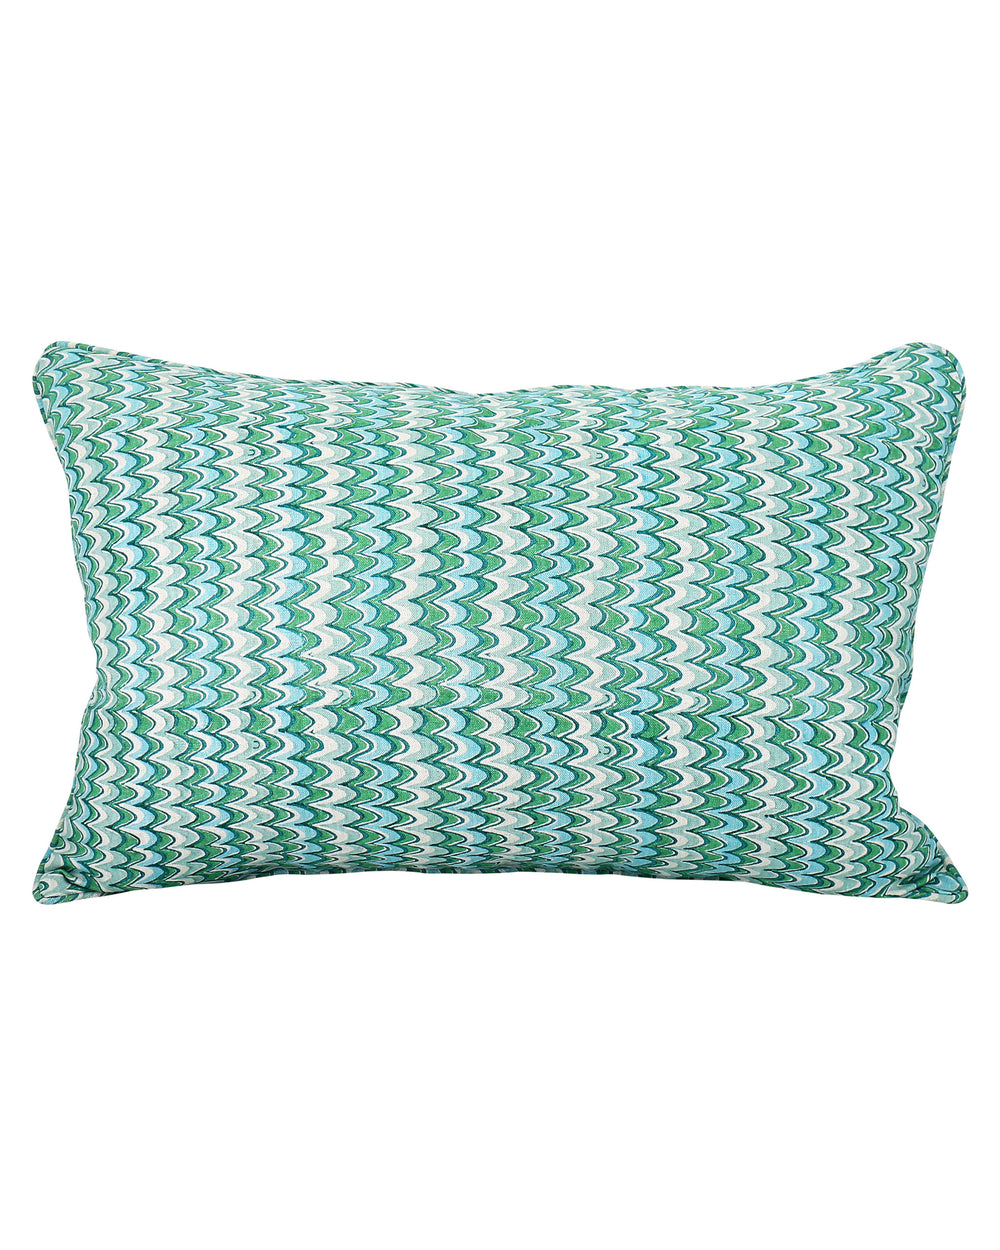 Firenze Emerald Pillow